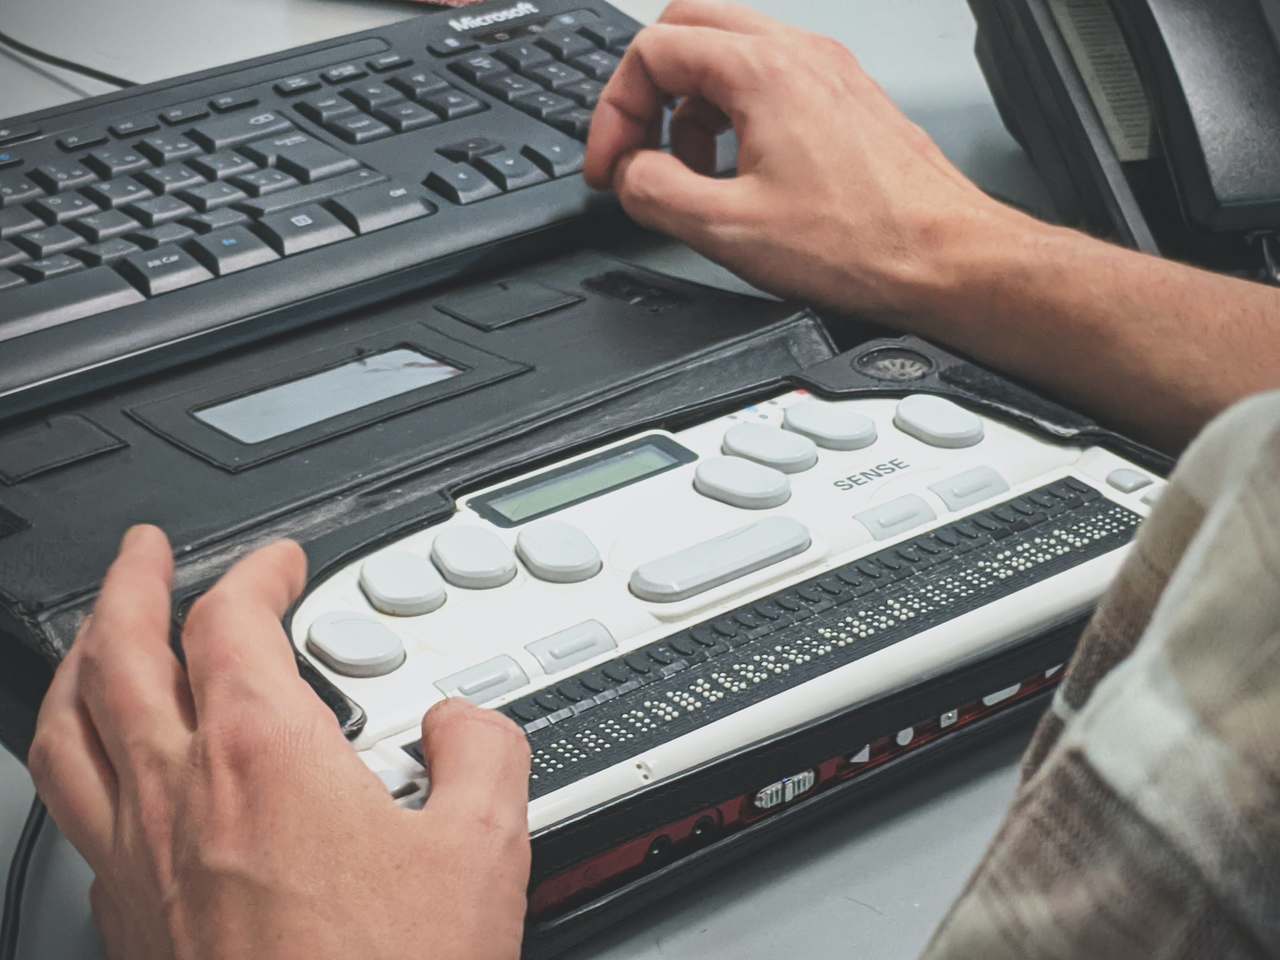 lei da acessibilidade - computador com teclado alternativo em braille